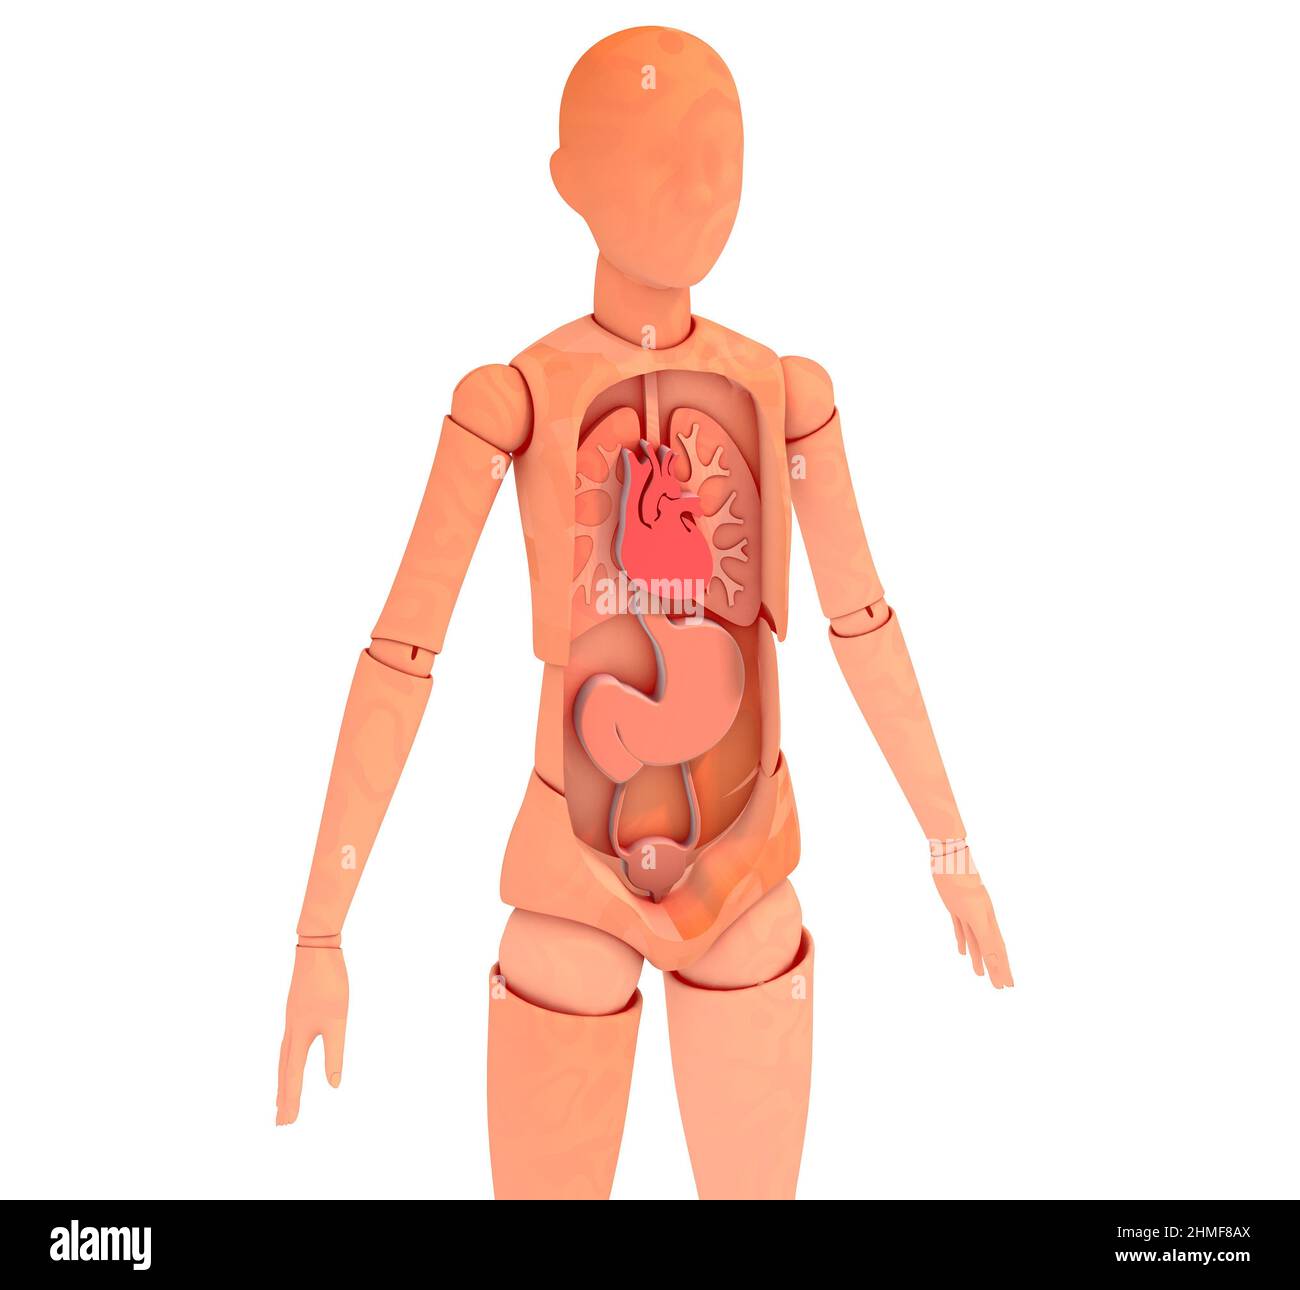 3d illustration du mannequin en bois articulé montrant l'intérieur anatomique. Organes vitaux, image rognée sur fond blanc. Banque D'Images